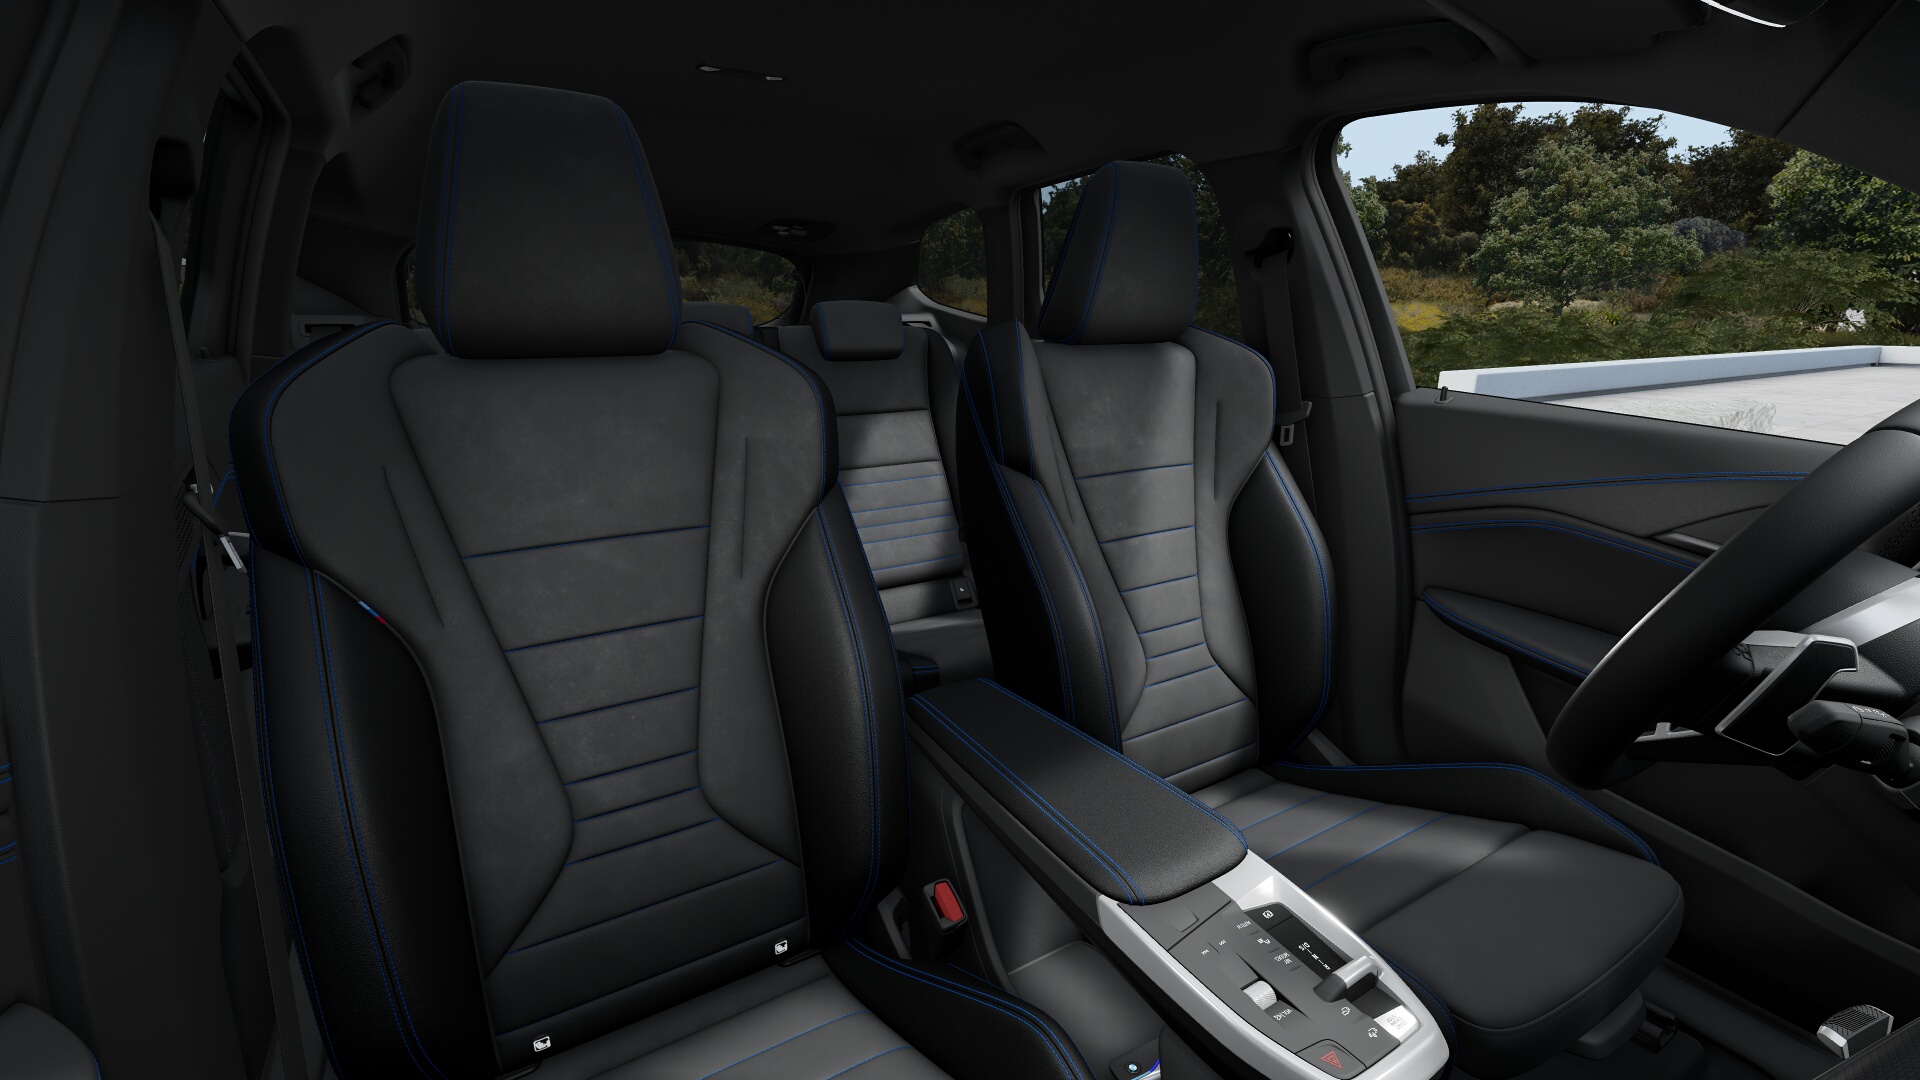 BMW X1 23d xDrive | nová generace | sportovně luxusní SUV | naftový motor 210 koní | maximální výbava | nový model 2023 | auto ve výrobě | objednání online | auto eshop AUTOiBUY.com